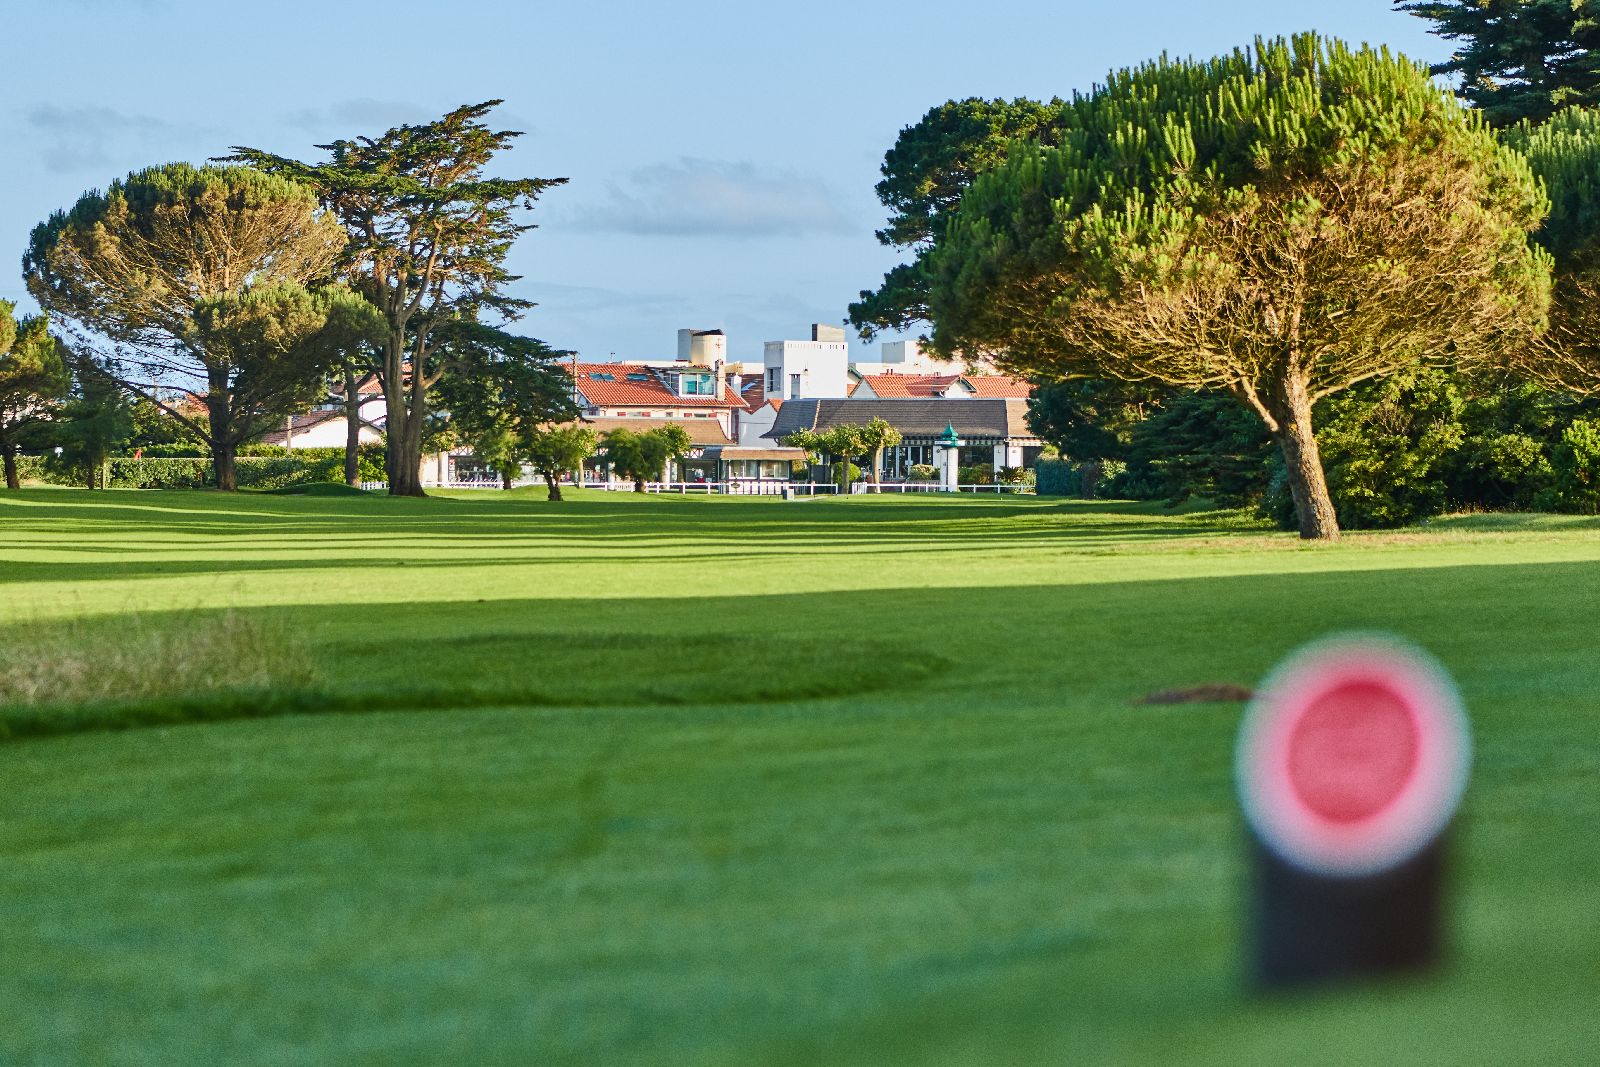 golf-expedition-golf-reizen-frankrijk-regio-biarritz-les-voles-blue-golfbaan-green-hotel-achtergrond.jpg